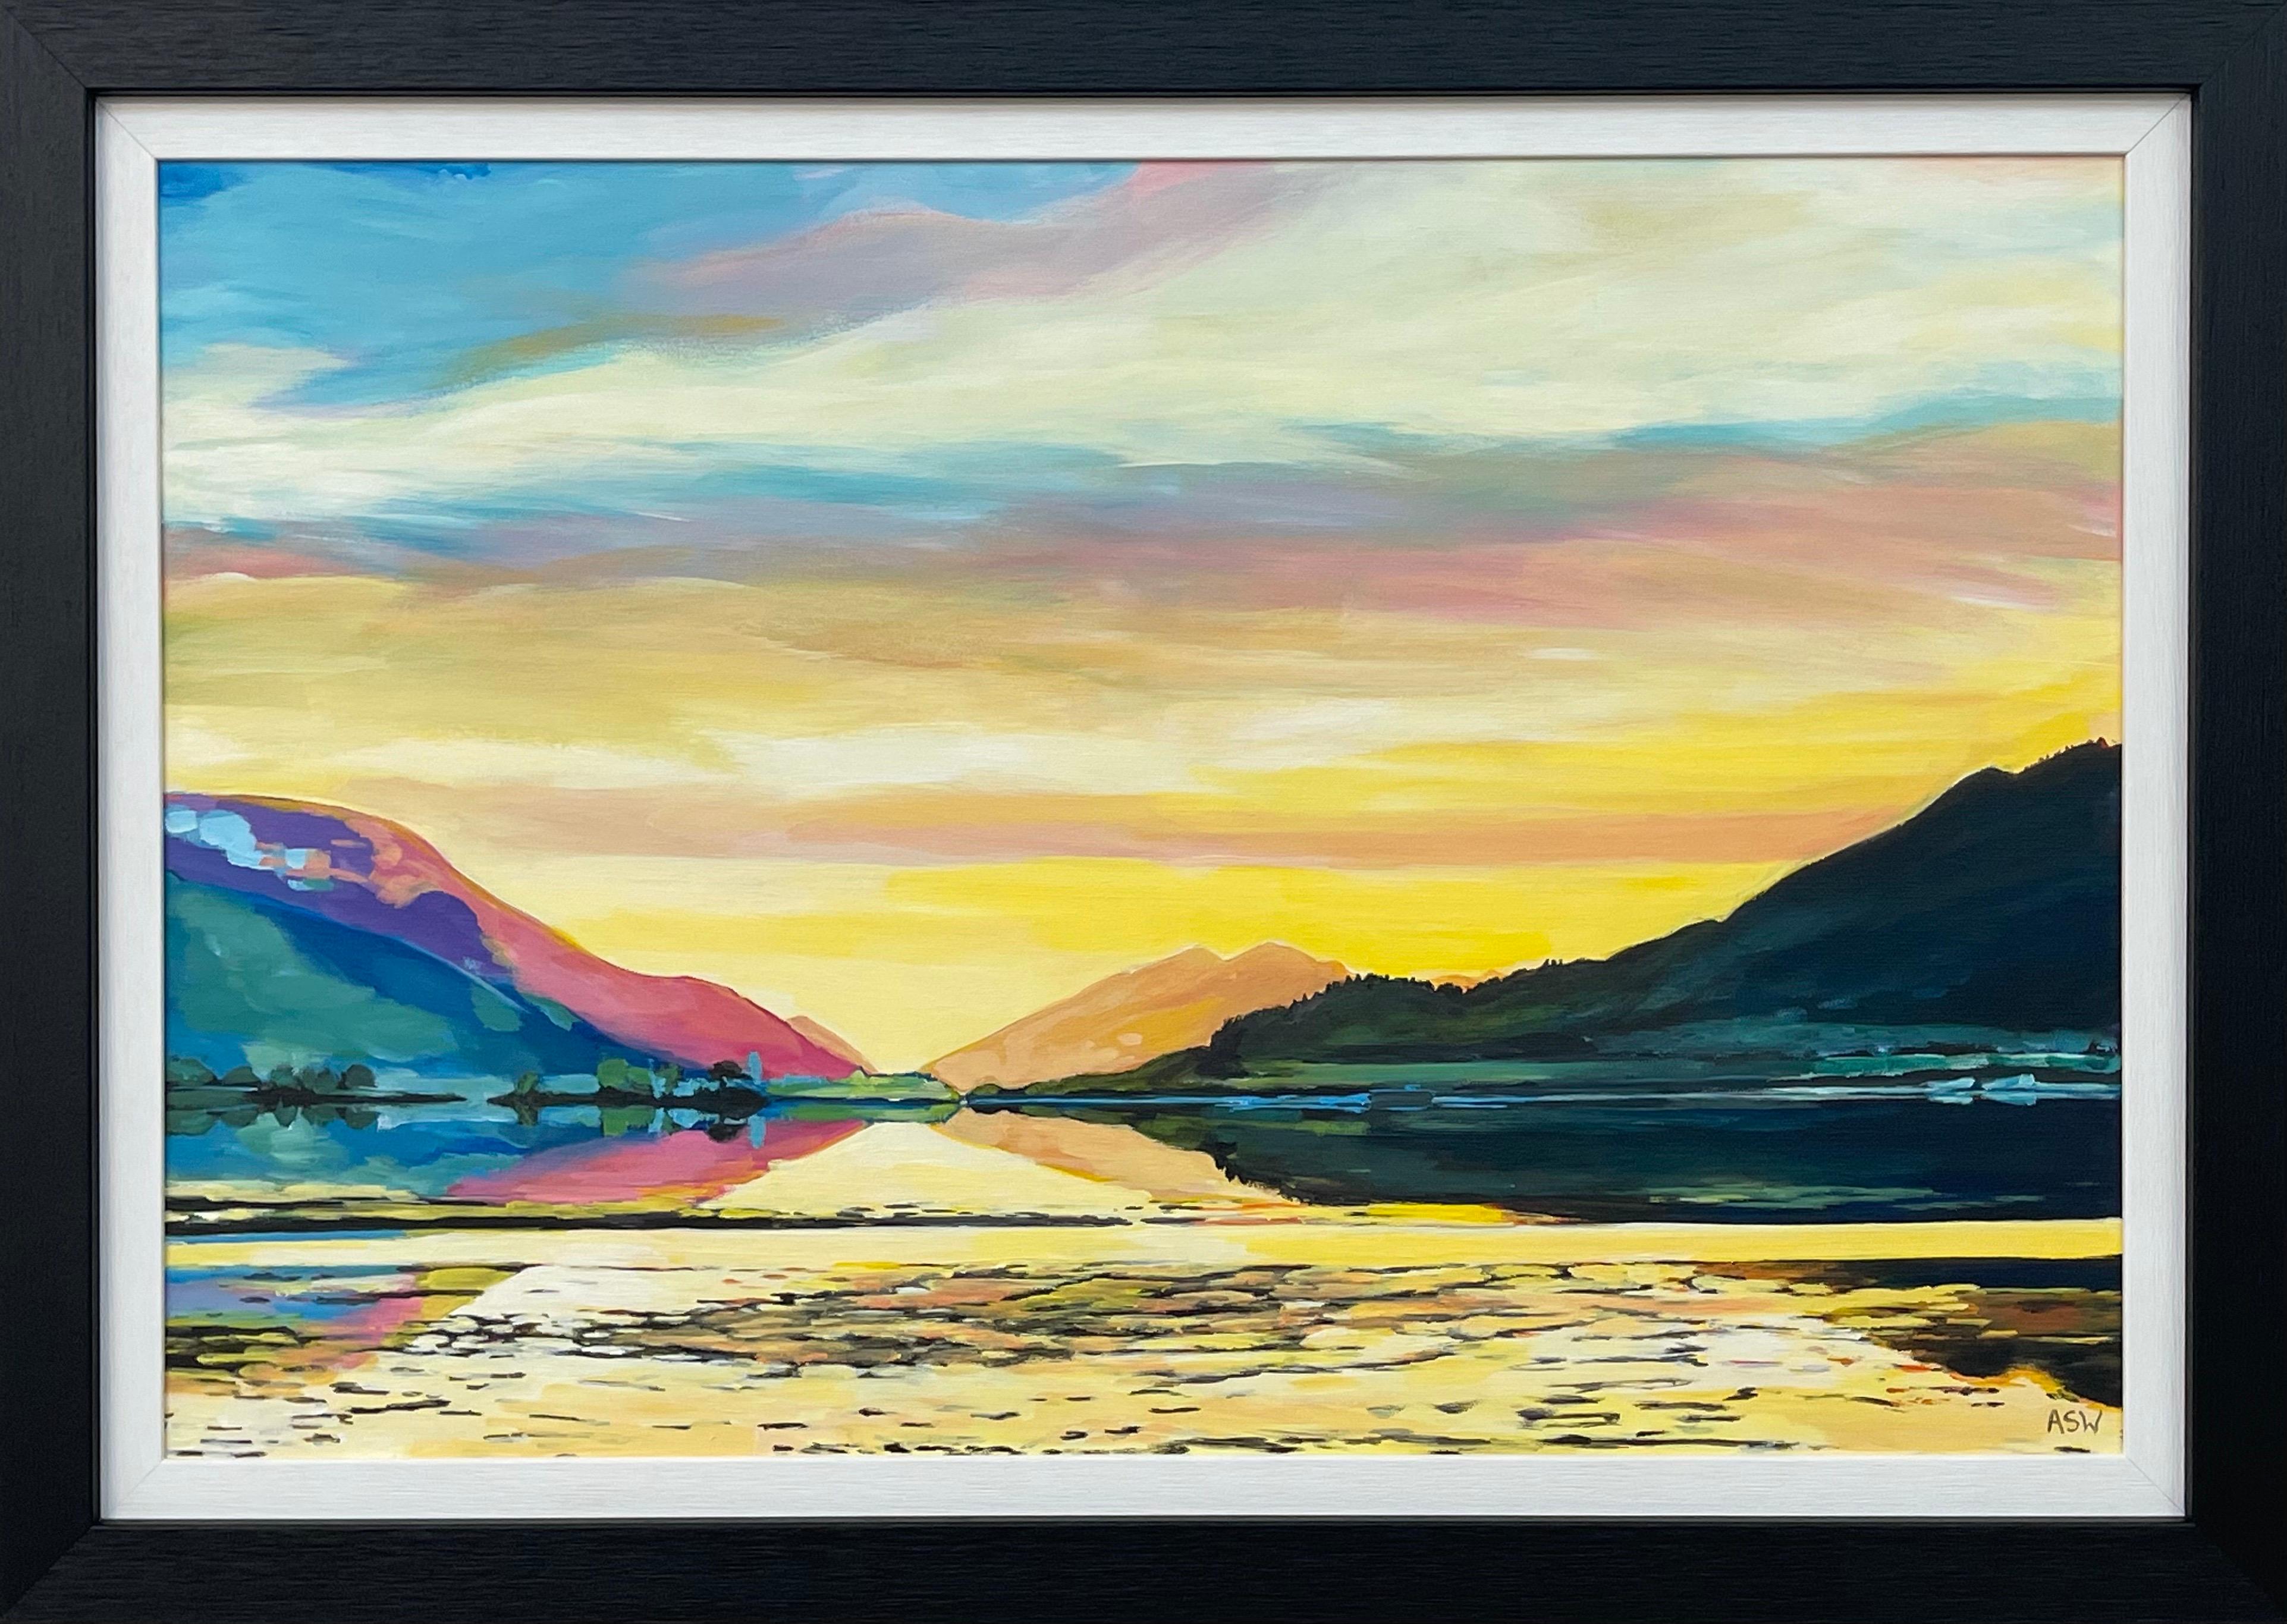 Peinture de paysage colorée des Highlands écossais par un artiste contemporain